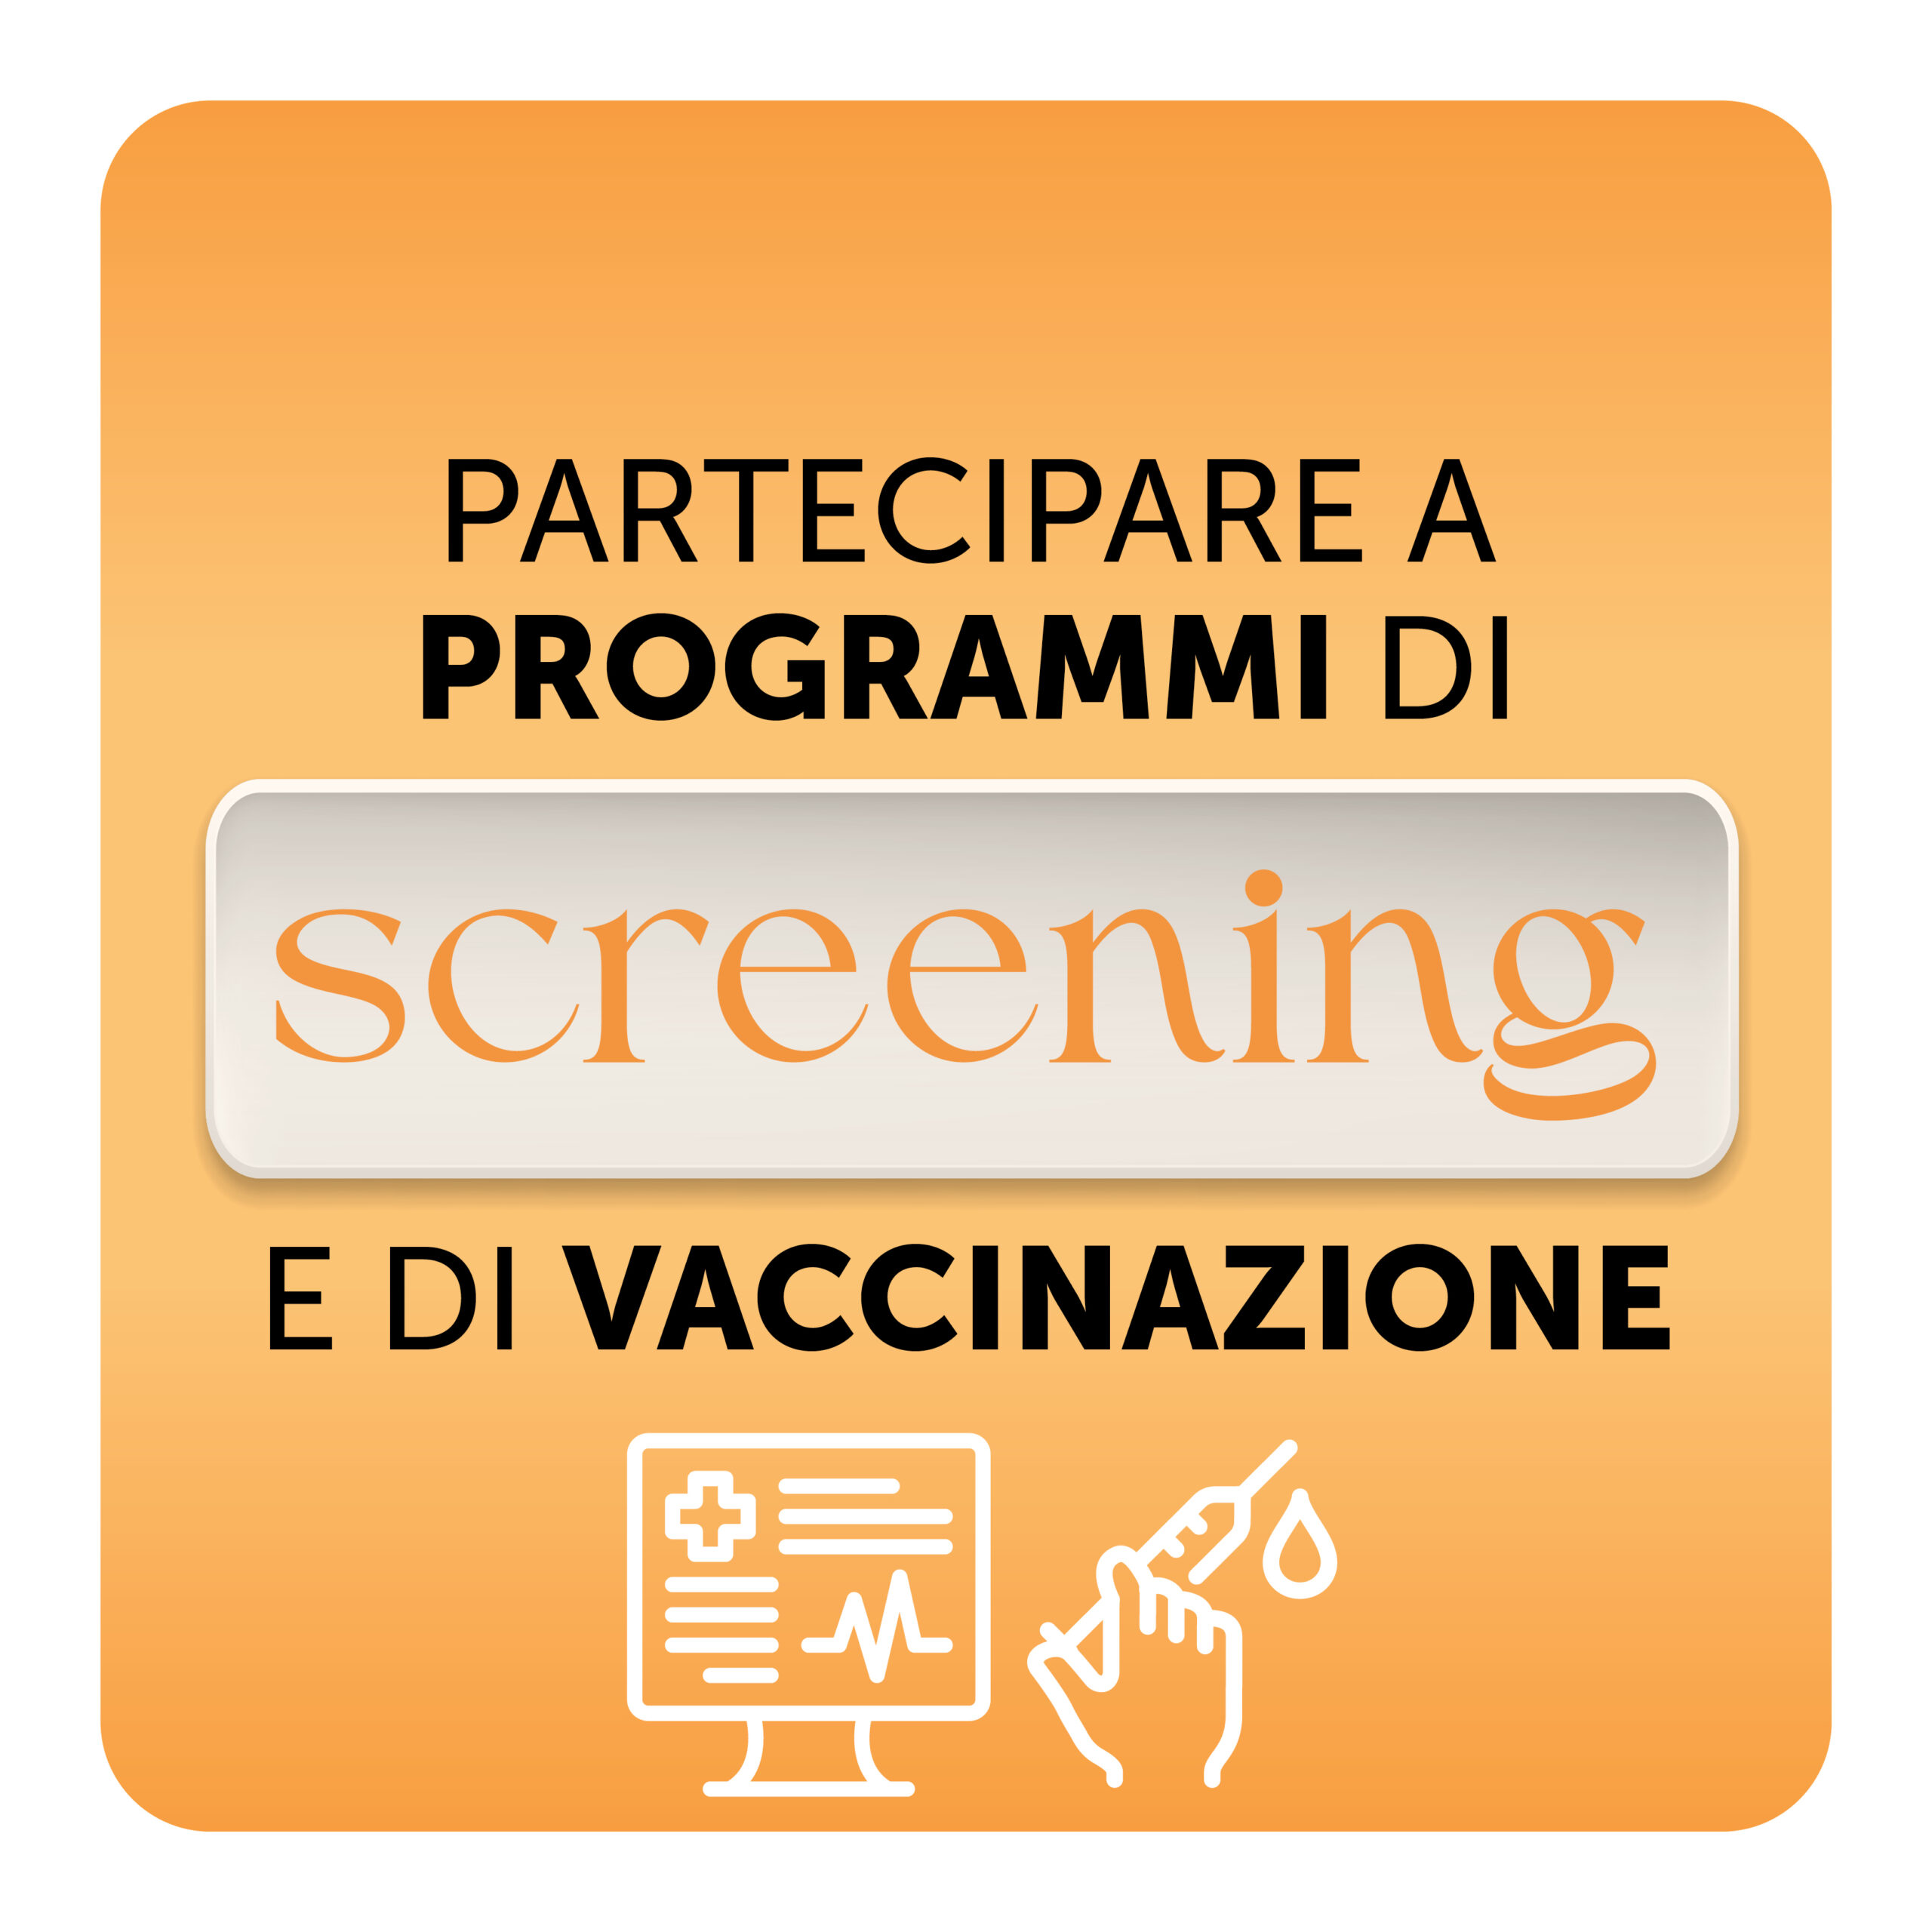 Partecipare a programmi di screening e di vaccinazioni